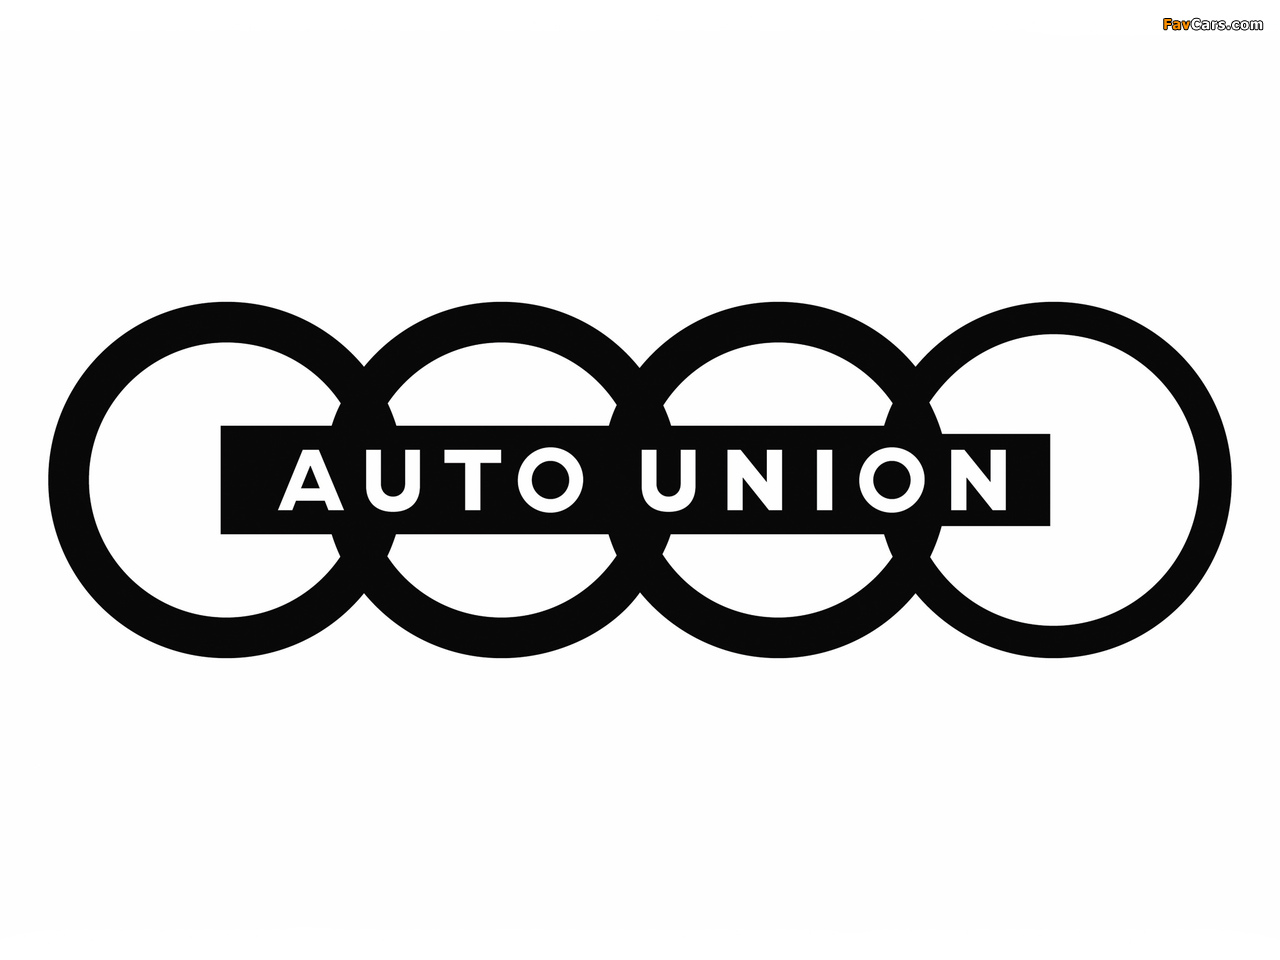 Auto Union images (1280 x 960)